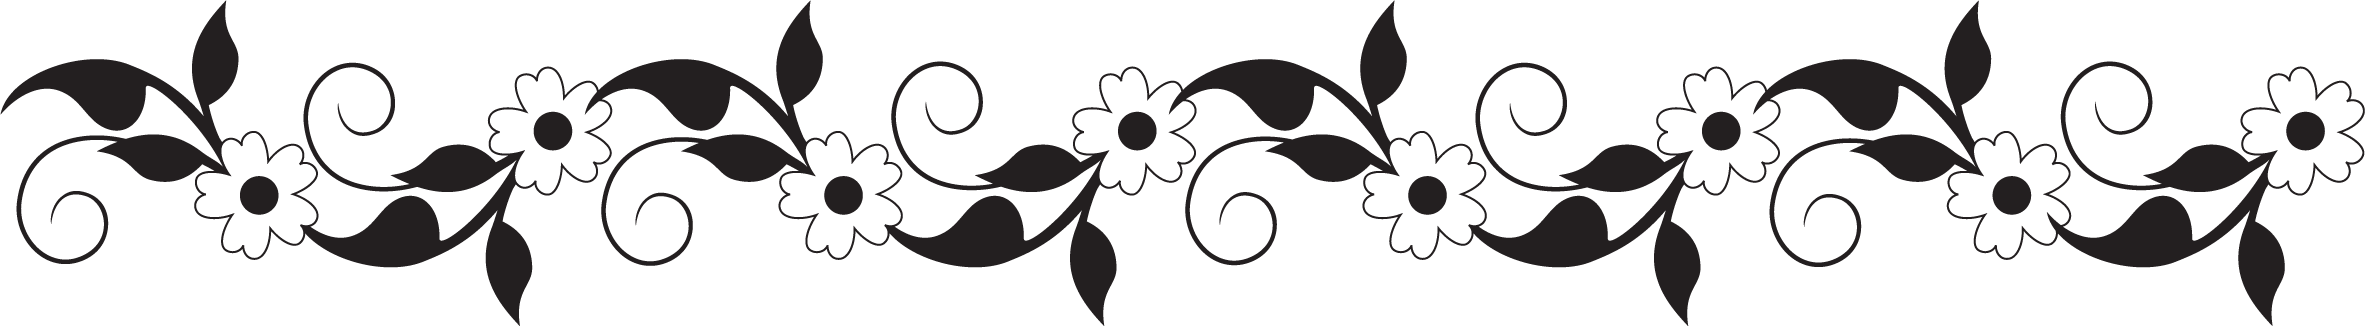 花のイラスト フリー素材 フレーム枠no 261 白黒 葉 ボーダー